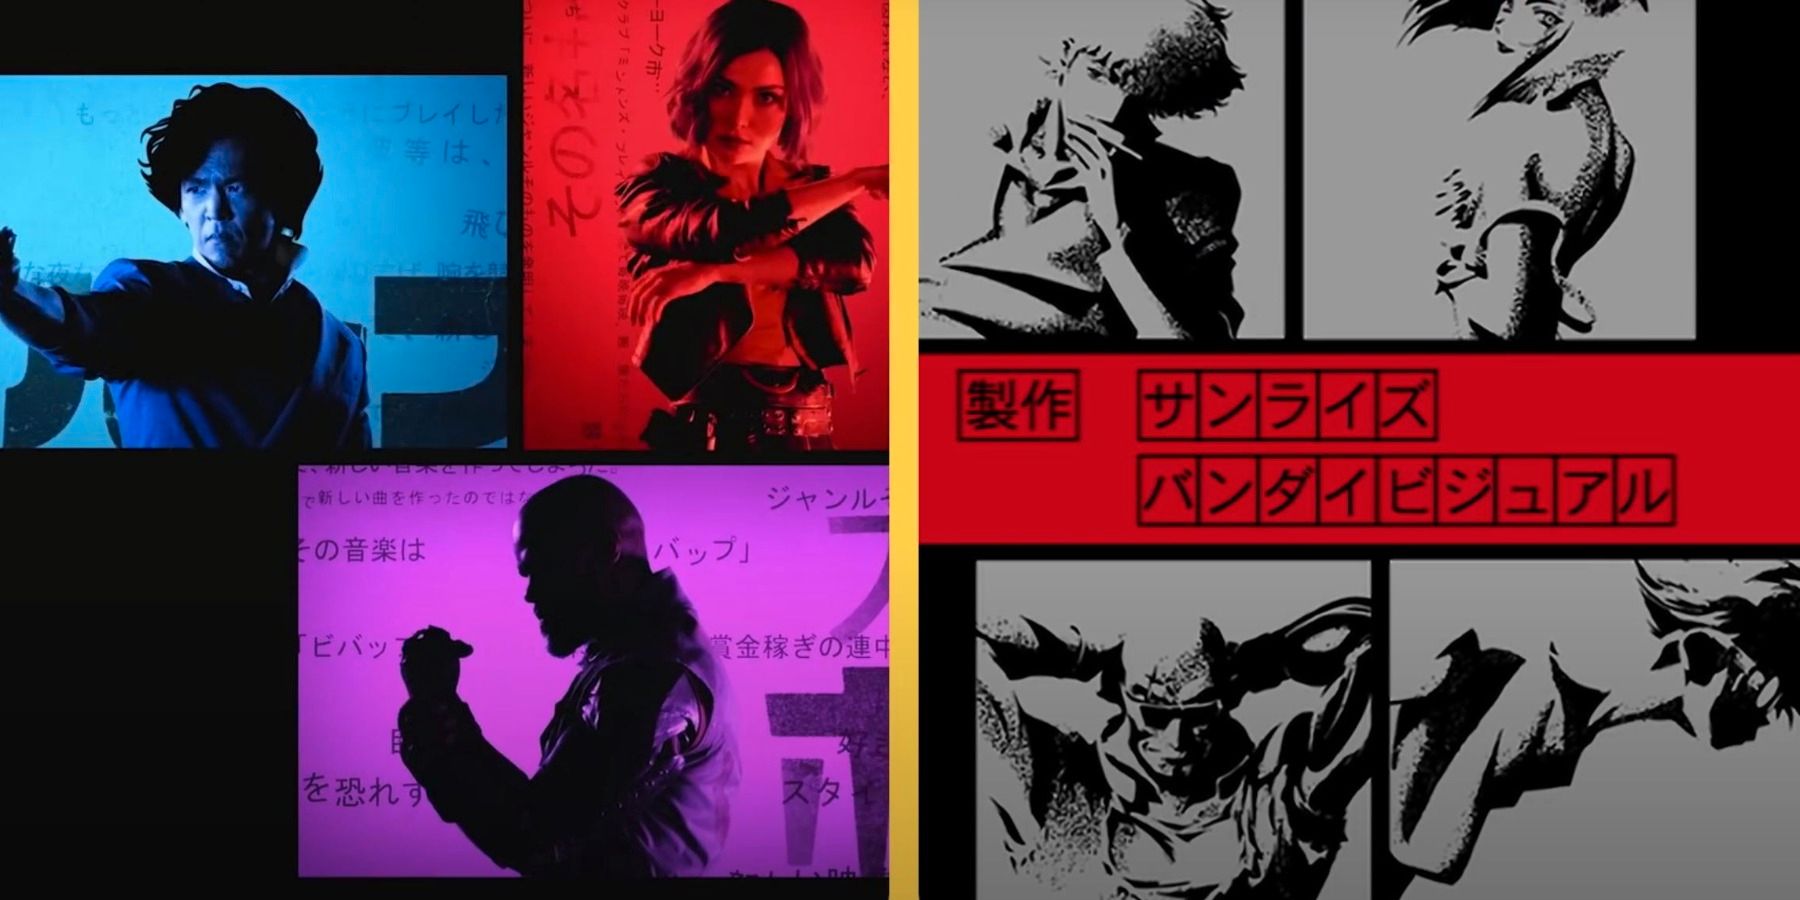 De Netflix-intro van Cowboy Bebop wordt zij aan zij vergeleken met de anime